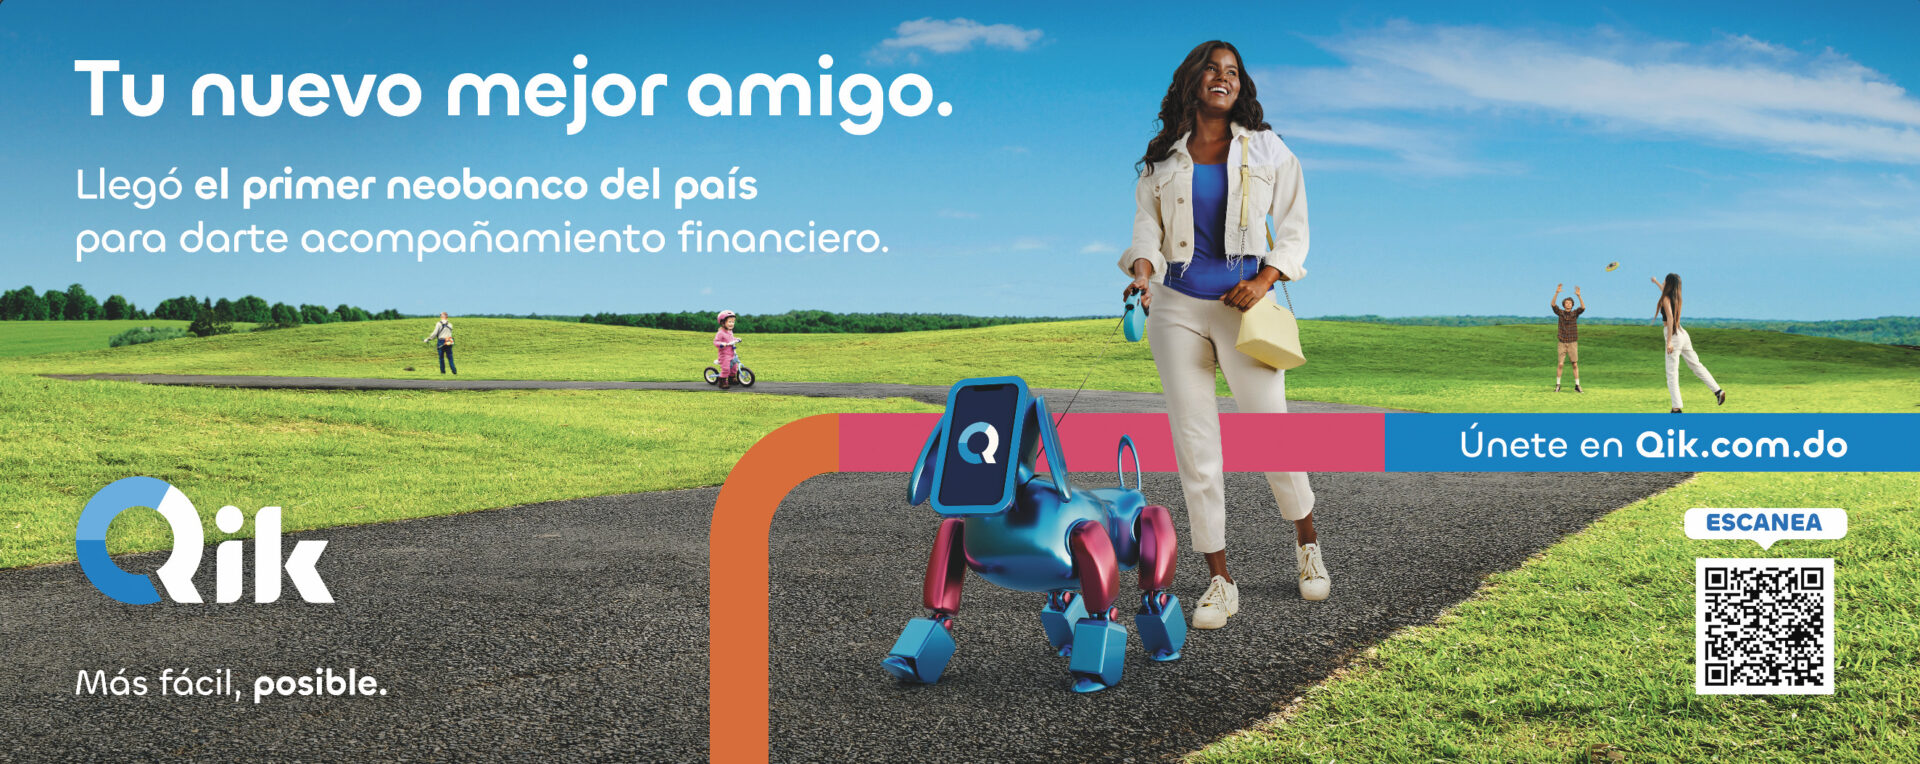 Qik Banco Digital presenta campaña “Más fácil, posible”